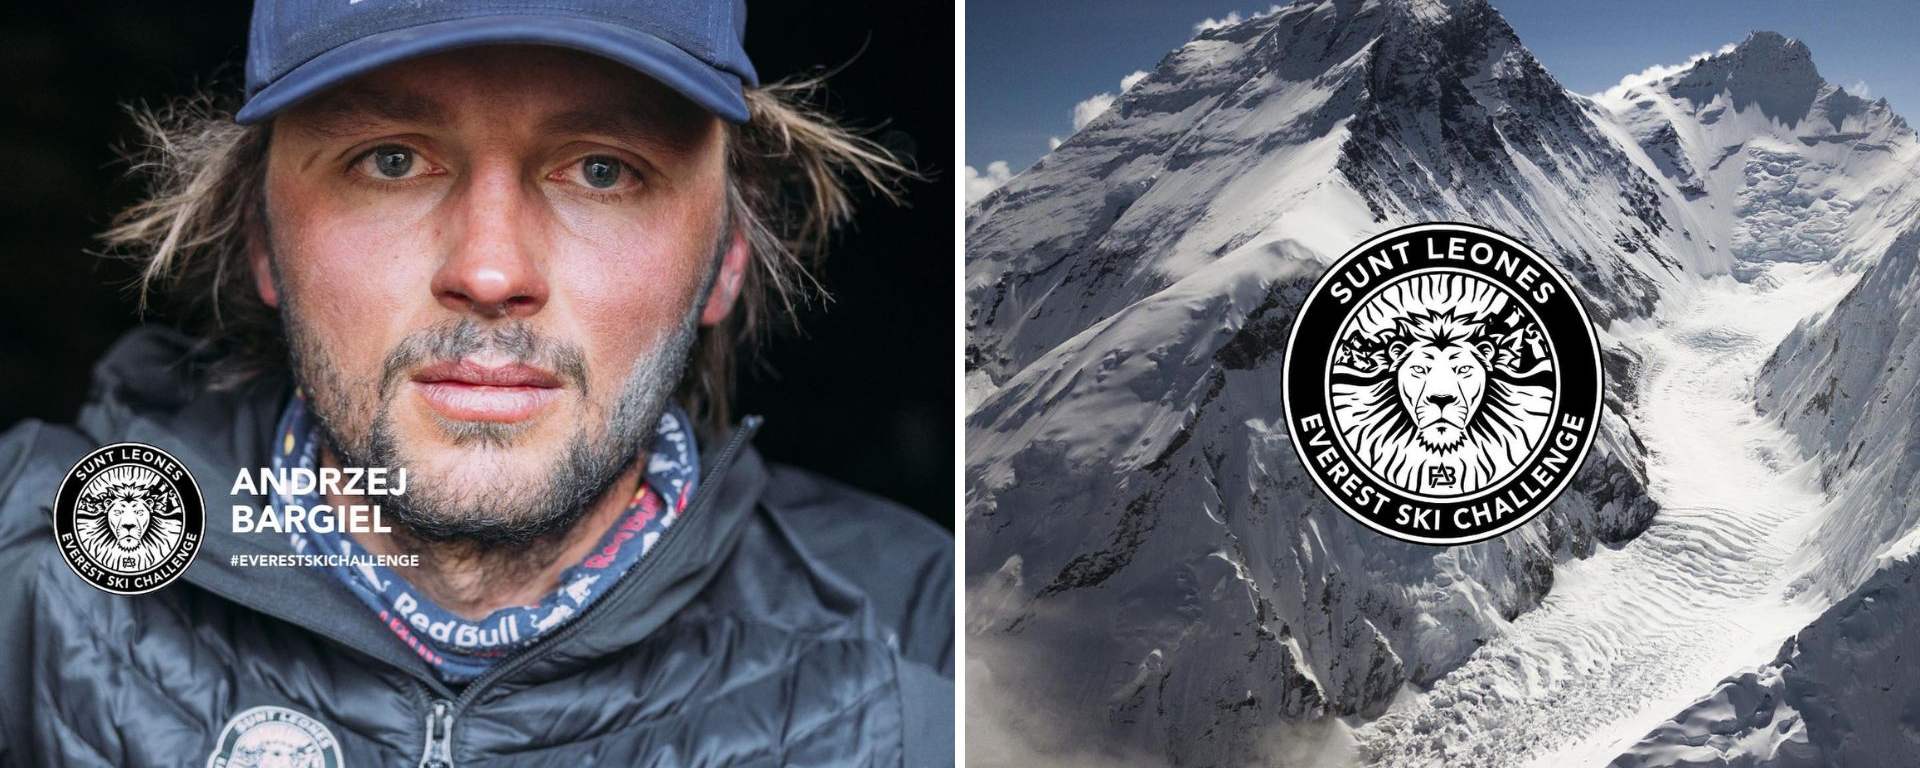 Andrzej Bargiel wraca na Mount Everest w ramach projektu Hic Sunt Leones